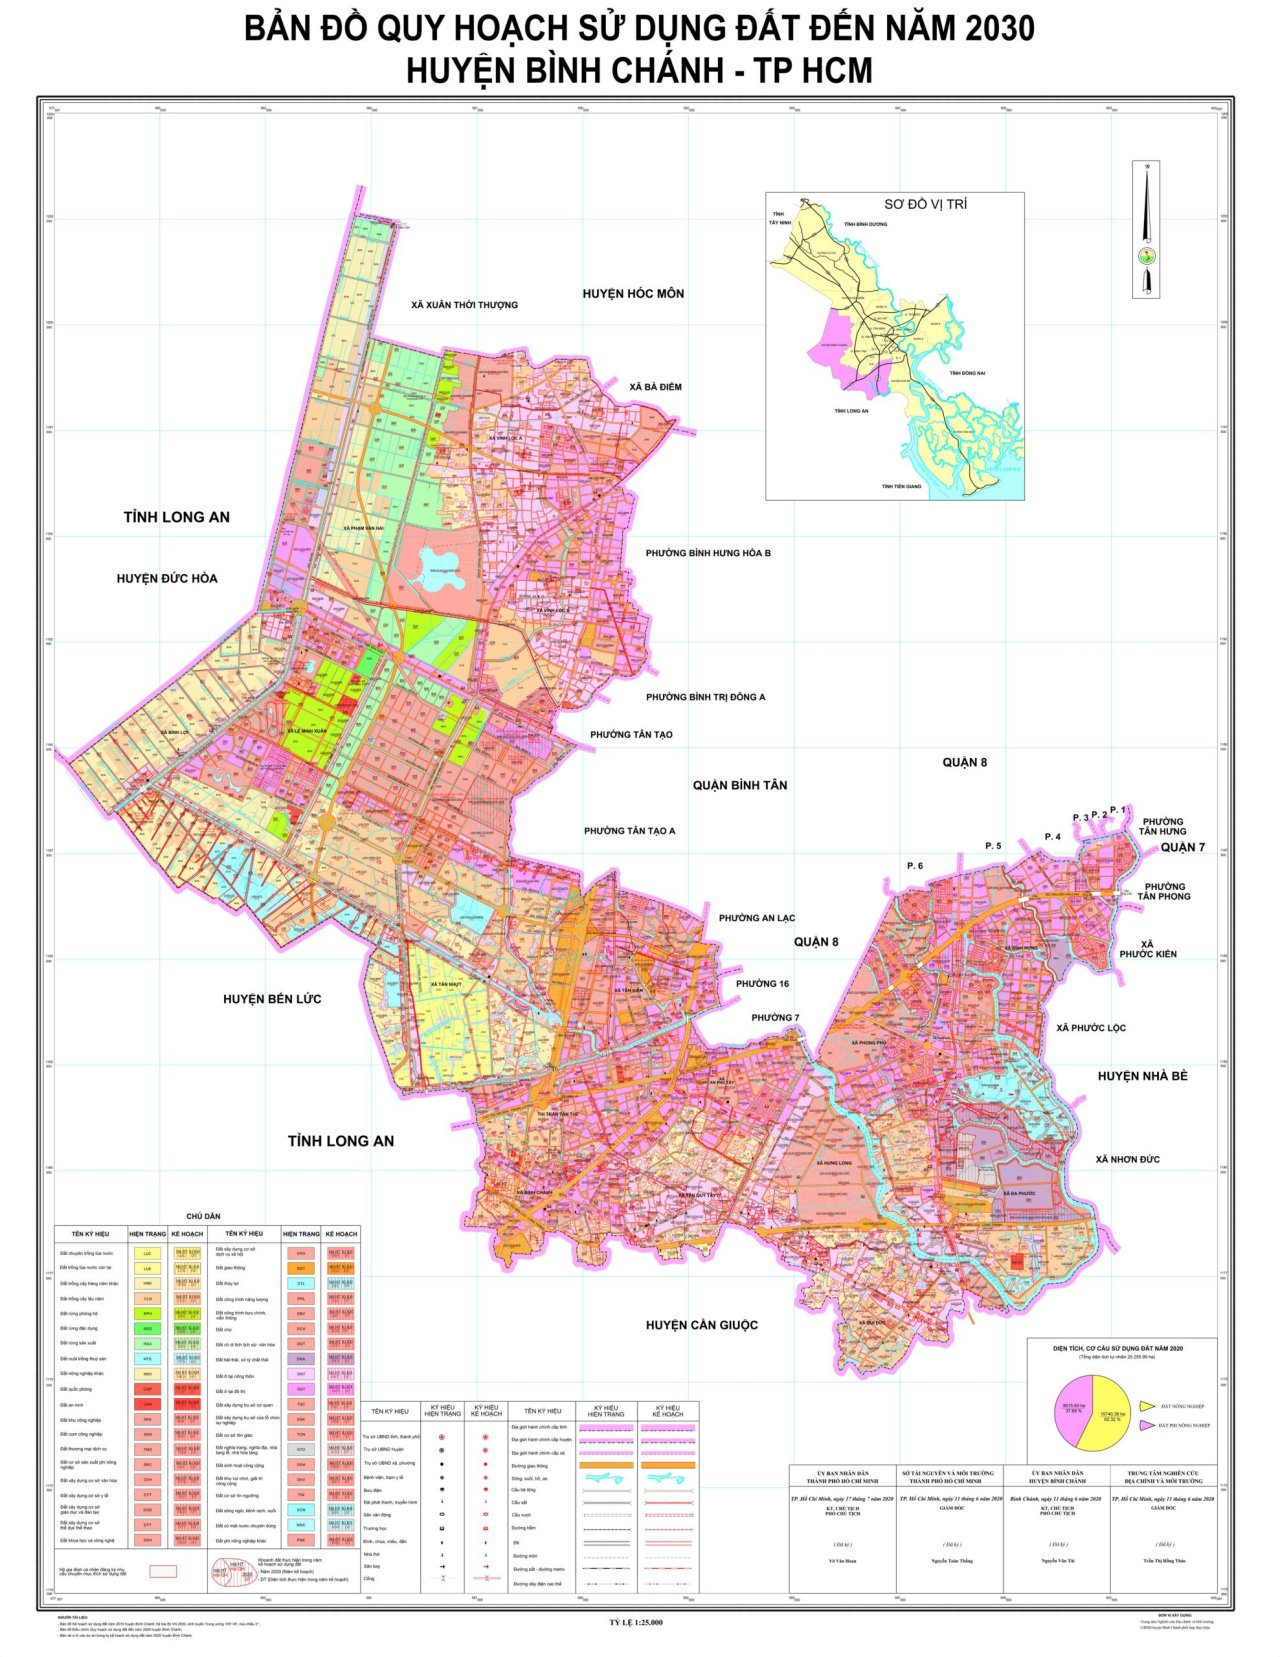 Bản đồ quy hoạch sử dụng đất tại huyện Bình Chánh đến năm 2030